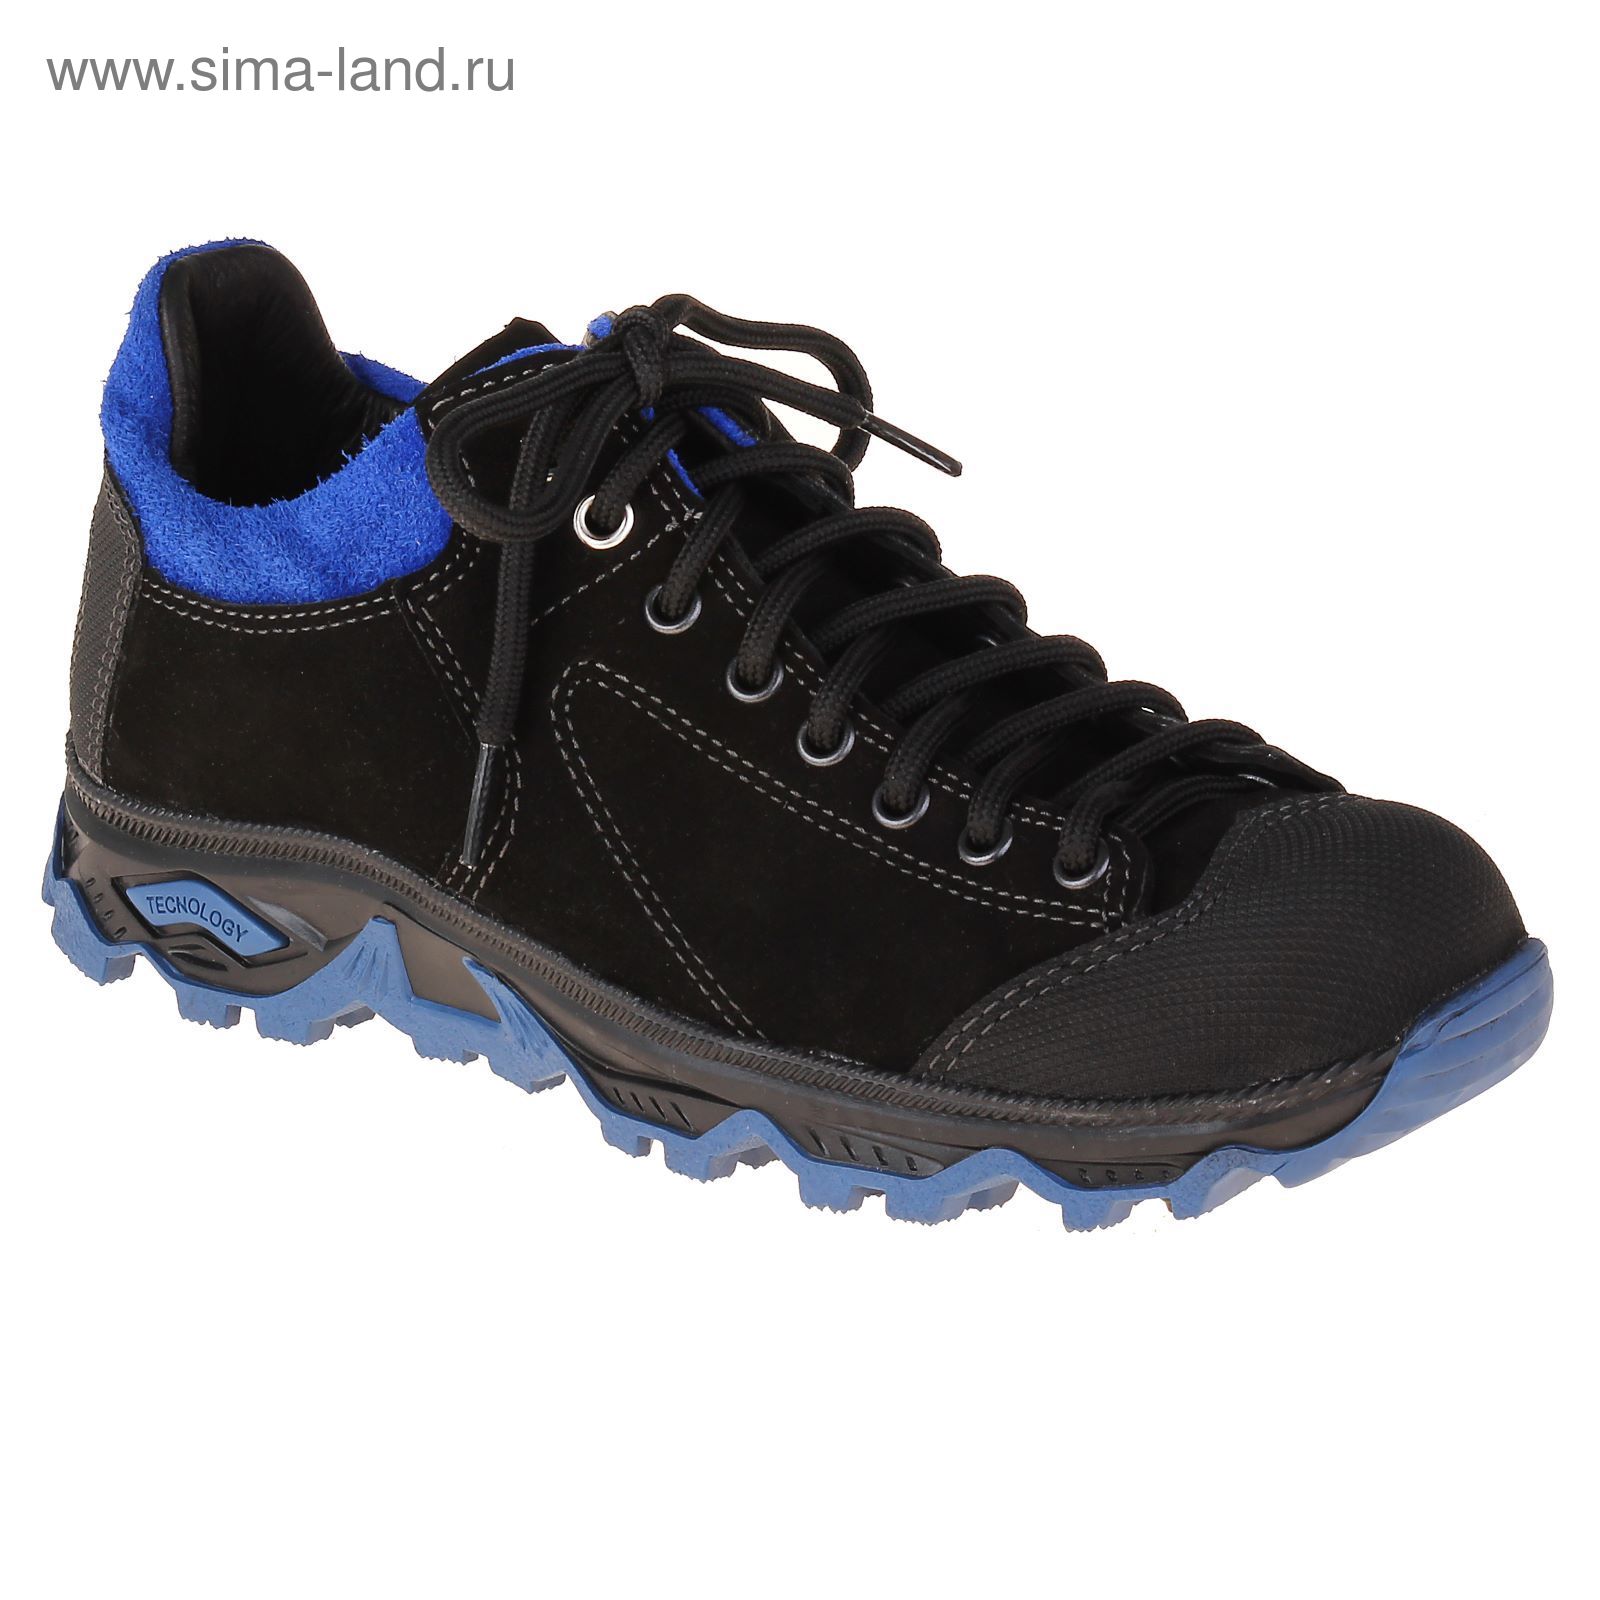 Ботинки TREK Стоун 132-46(08 текстиль (черный-синий) (р.41)